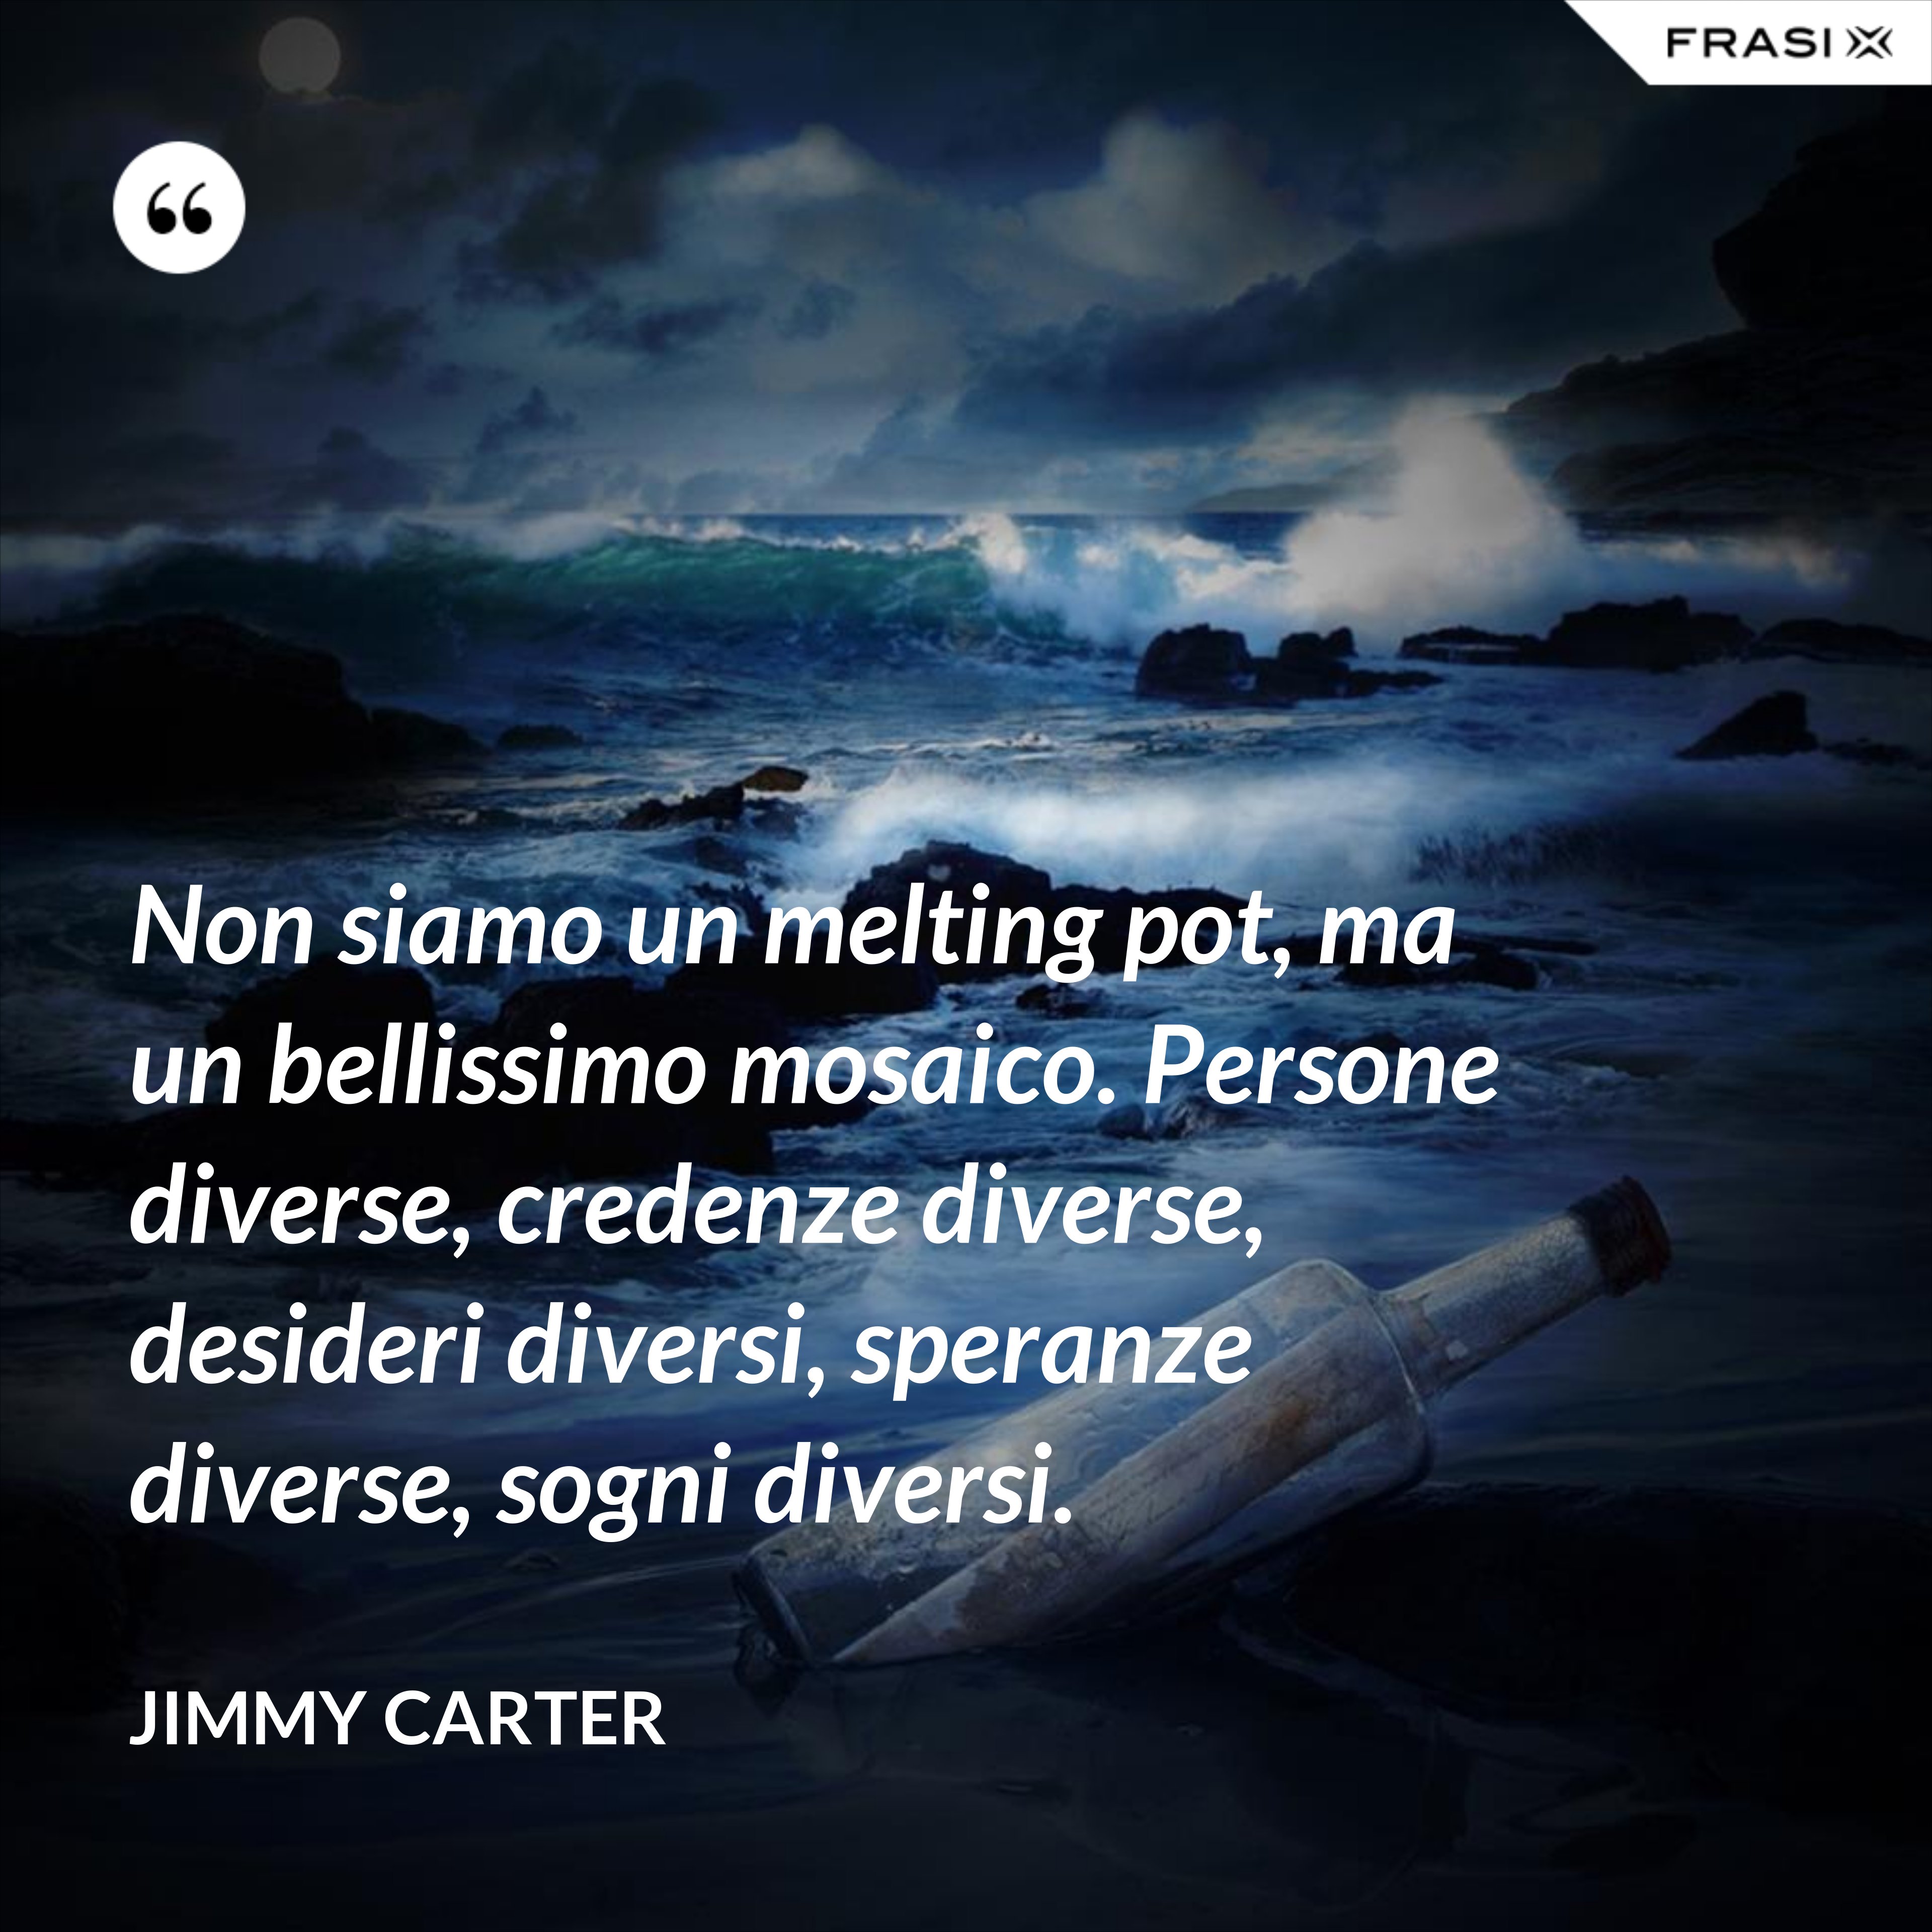 Non siamo un melting pot, ma un bellissimo mosaico. Persone diverse, credenze diverse, desideri diversi, speranze diverse, sogni diversi. - Jimmy Carter